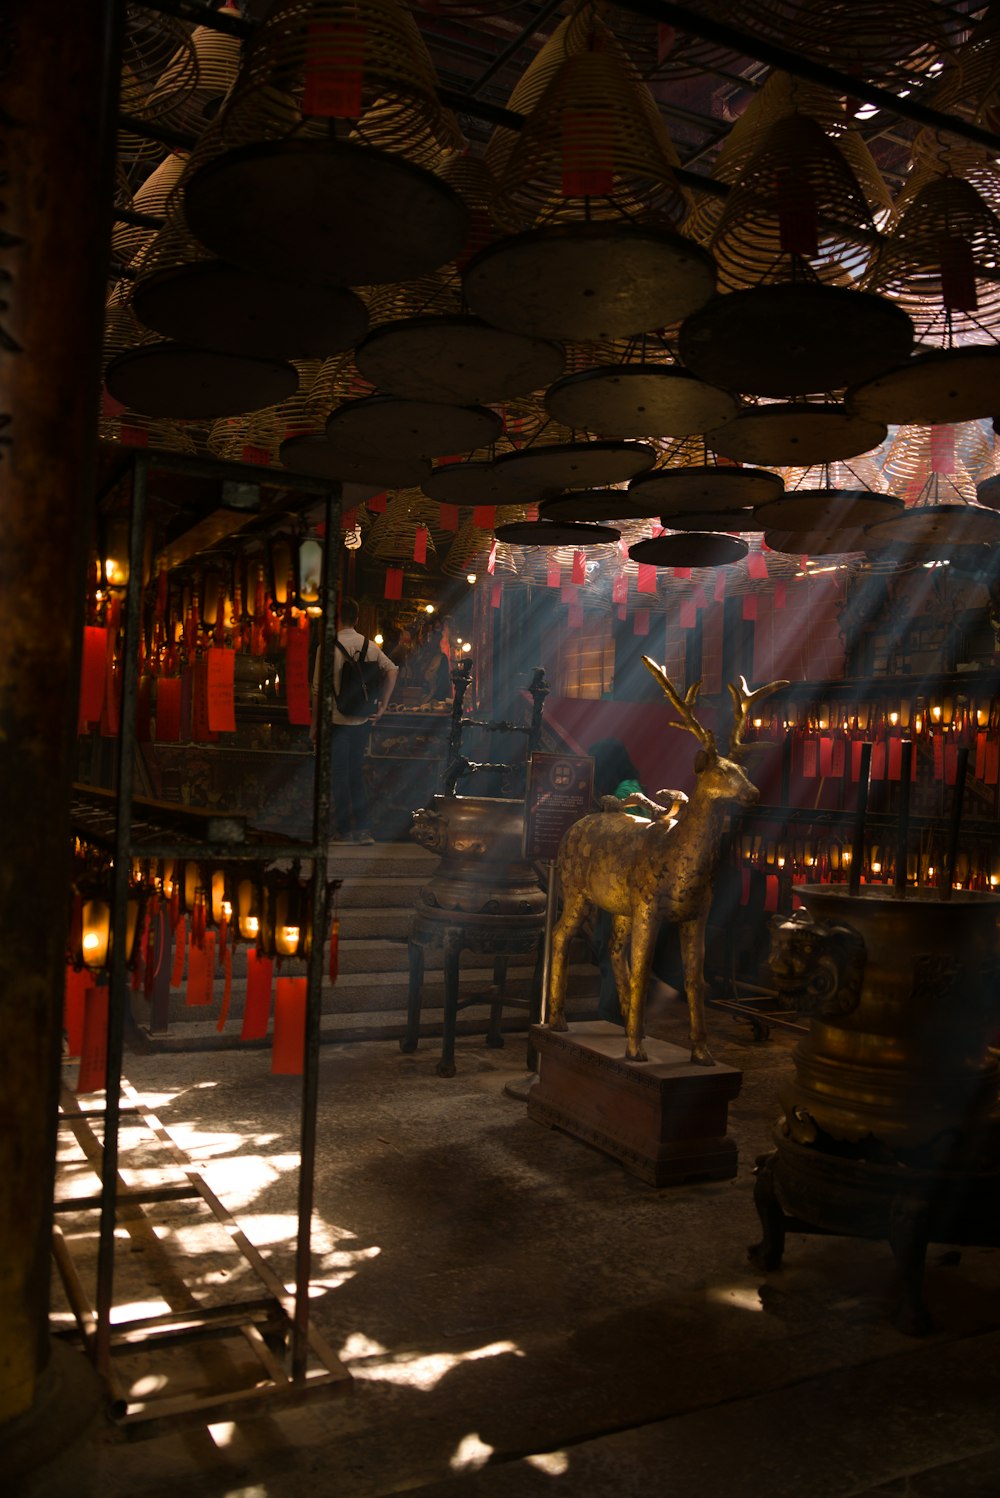 Eine Statue eines Hirsches in einem Raum mit vielen Lichtern